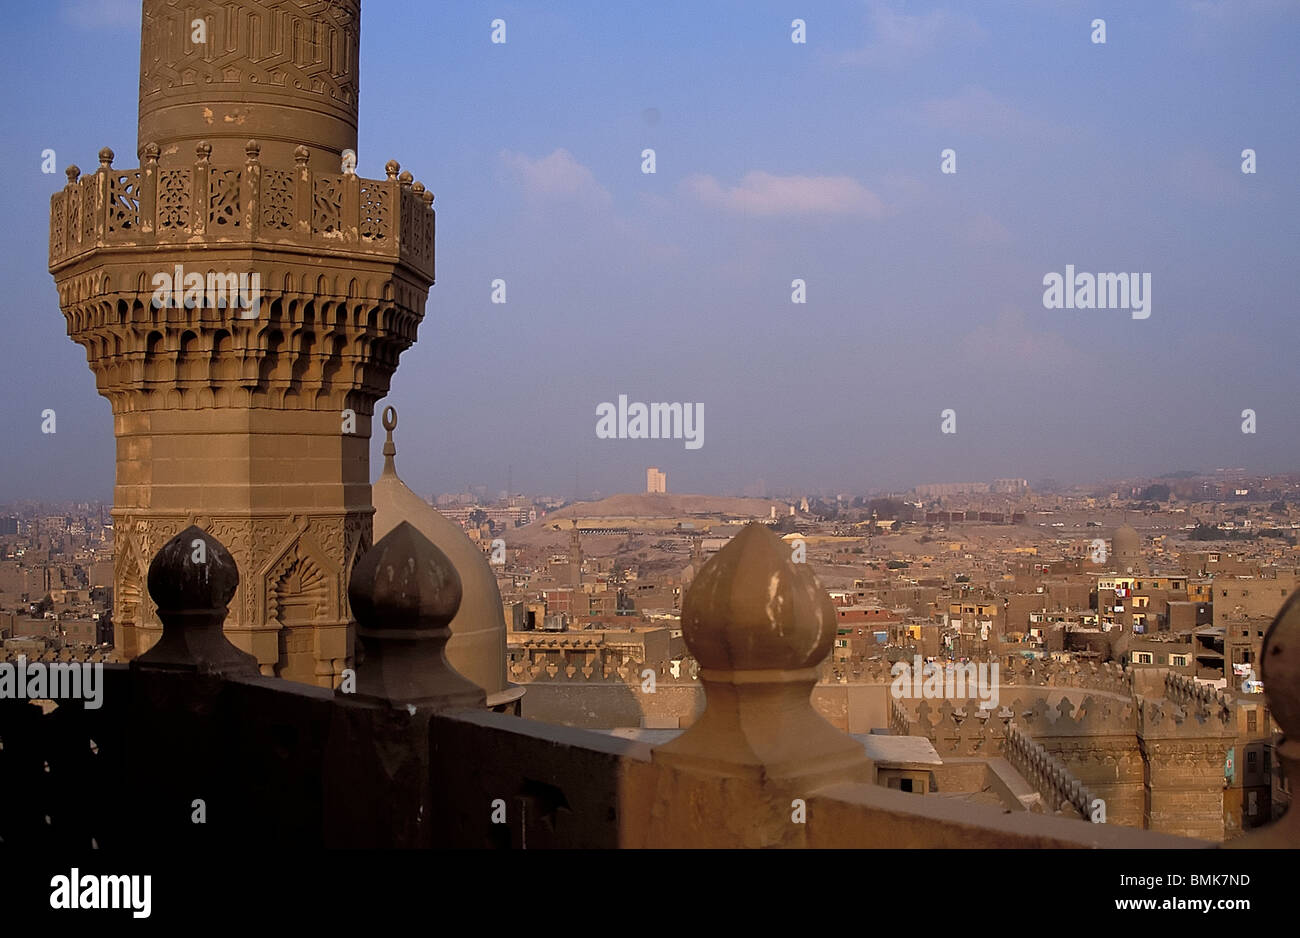 Minaret of the Al-Rifa'i Mosque, Cairo, Al Qahirah, Egypt Stock Photo